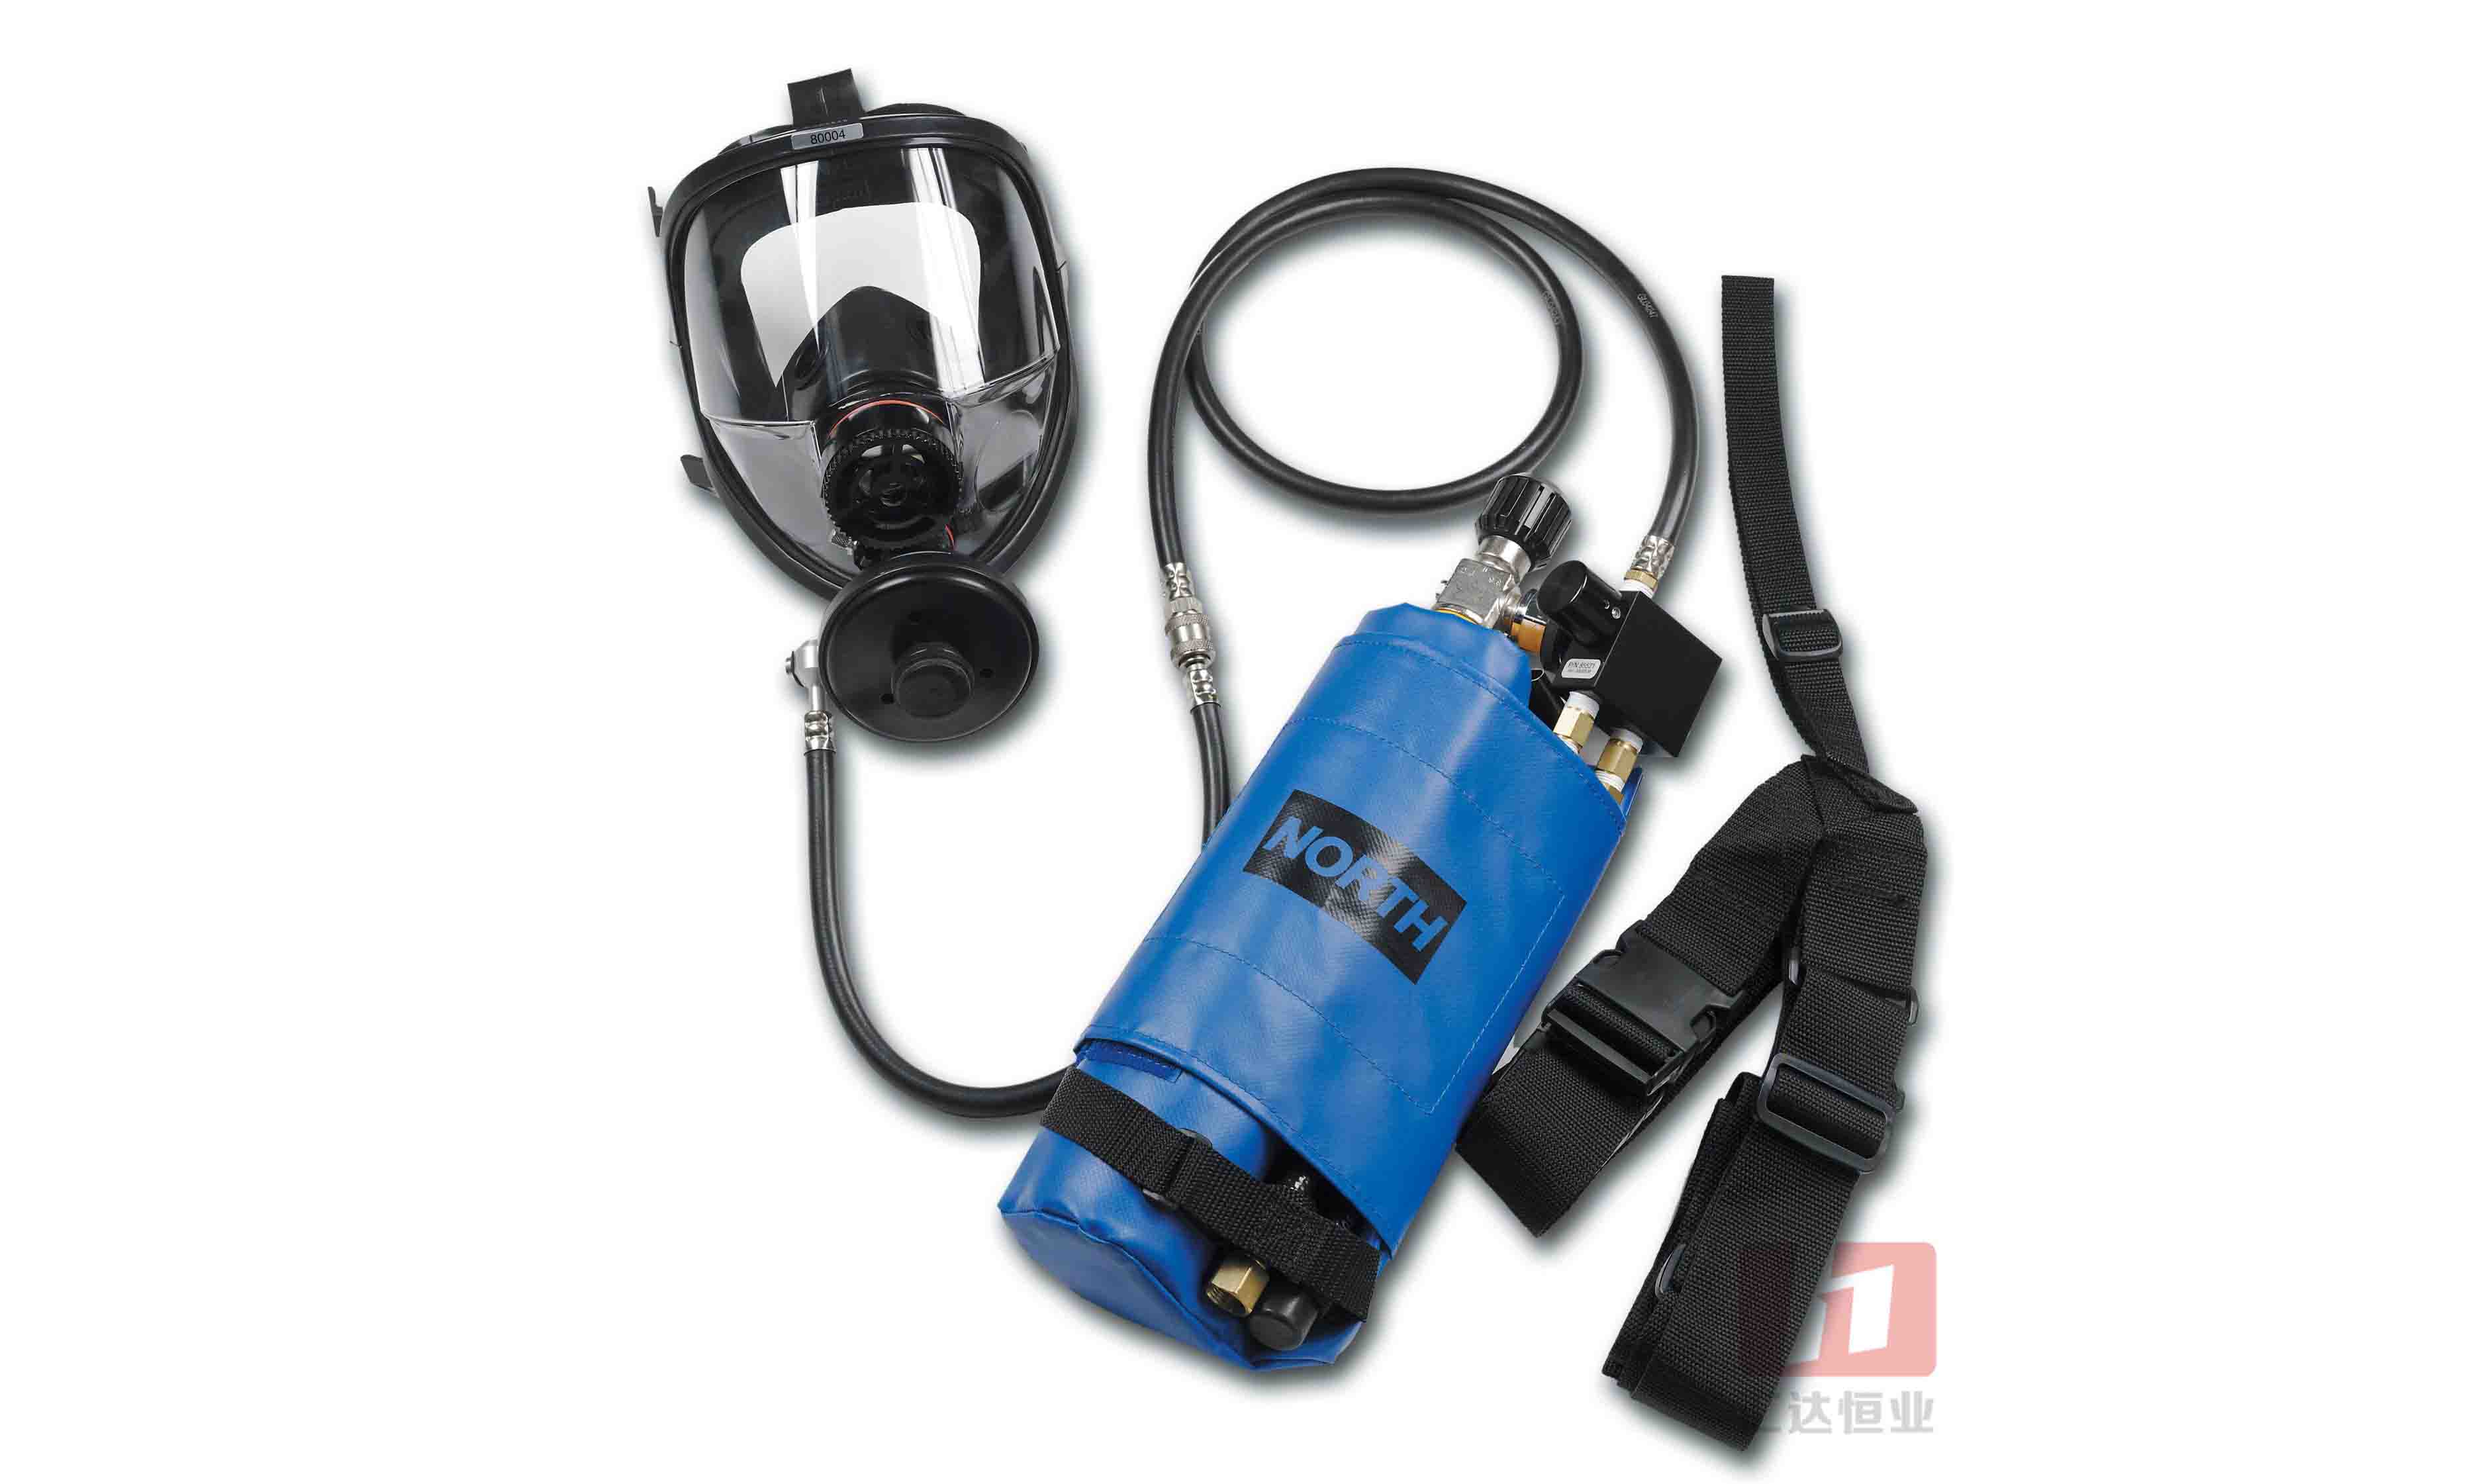 諾斯 85510 正壓供氣式長管呼吸器